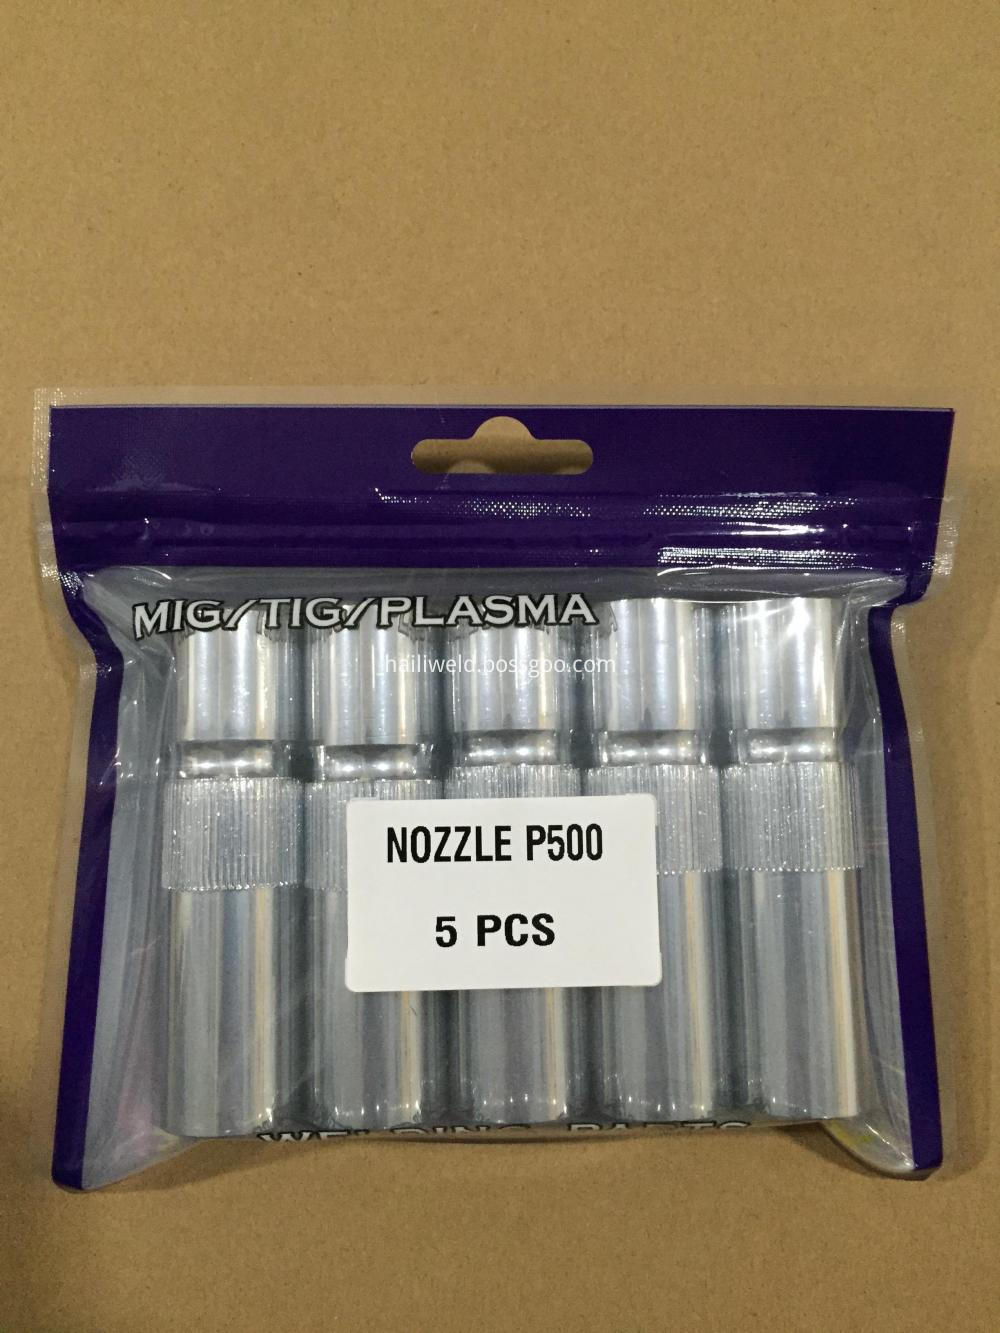 Nozzle P500